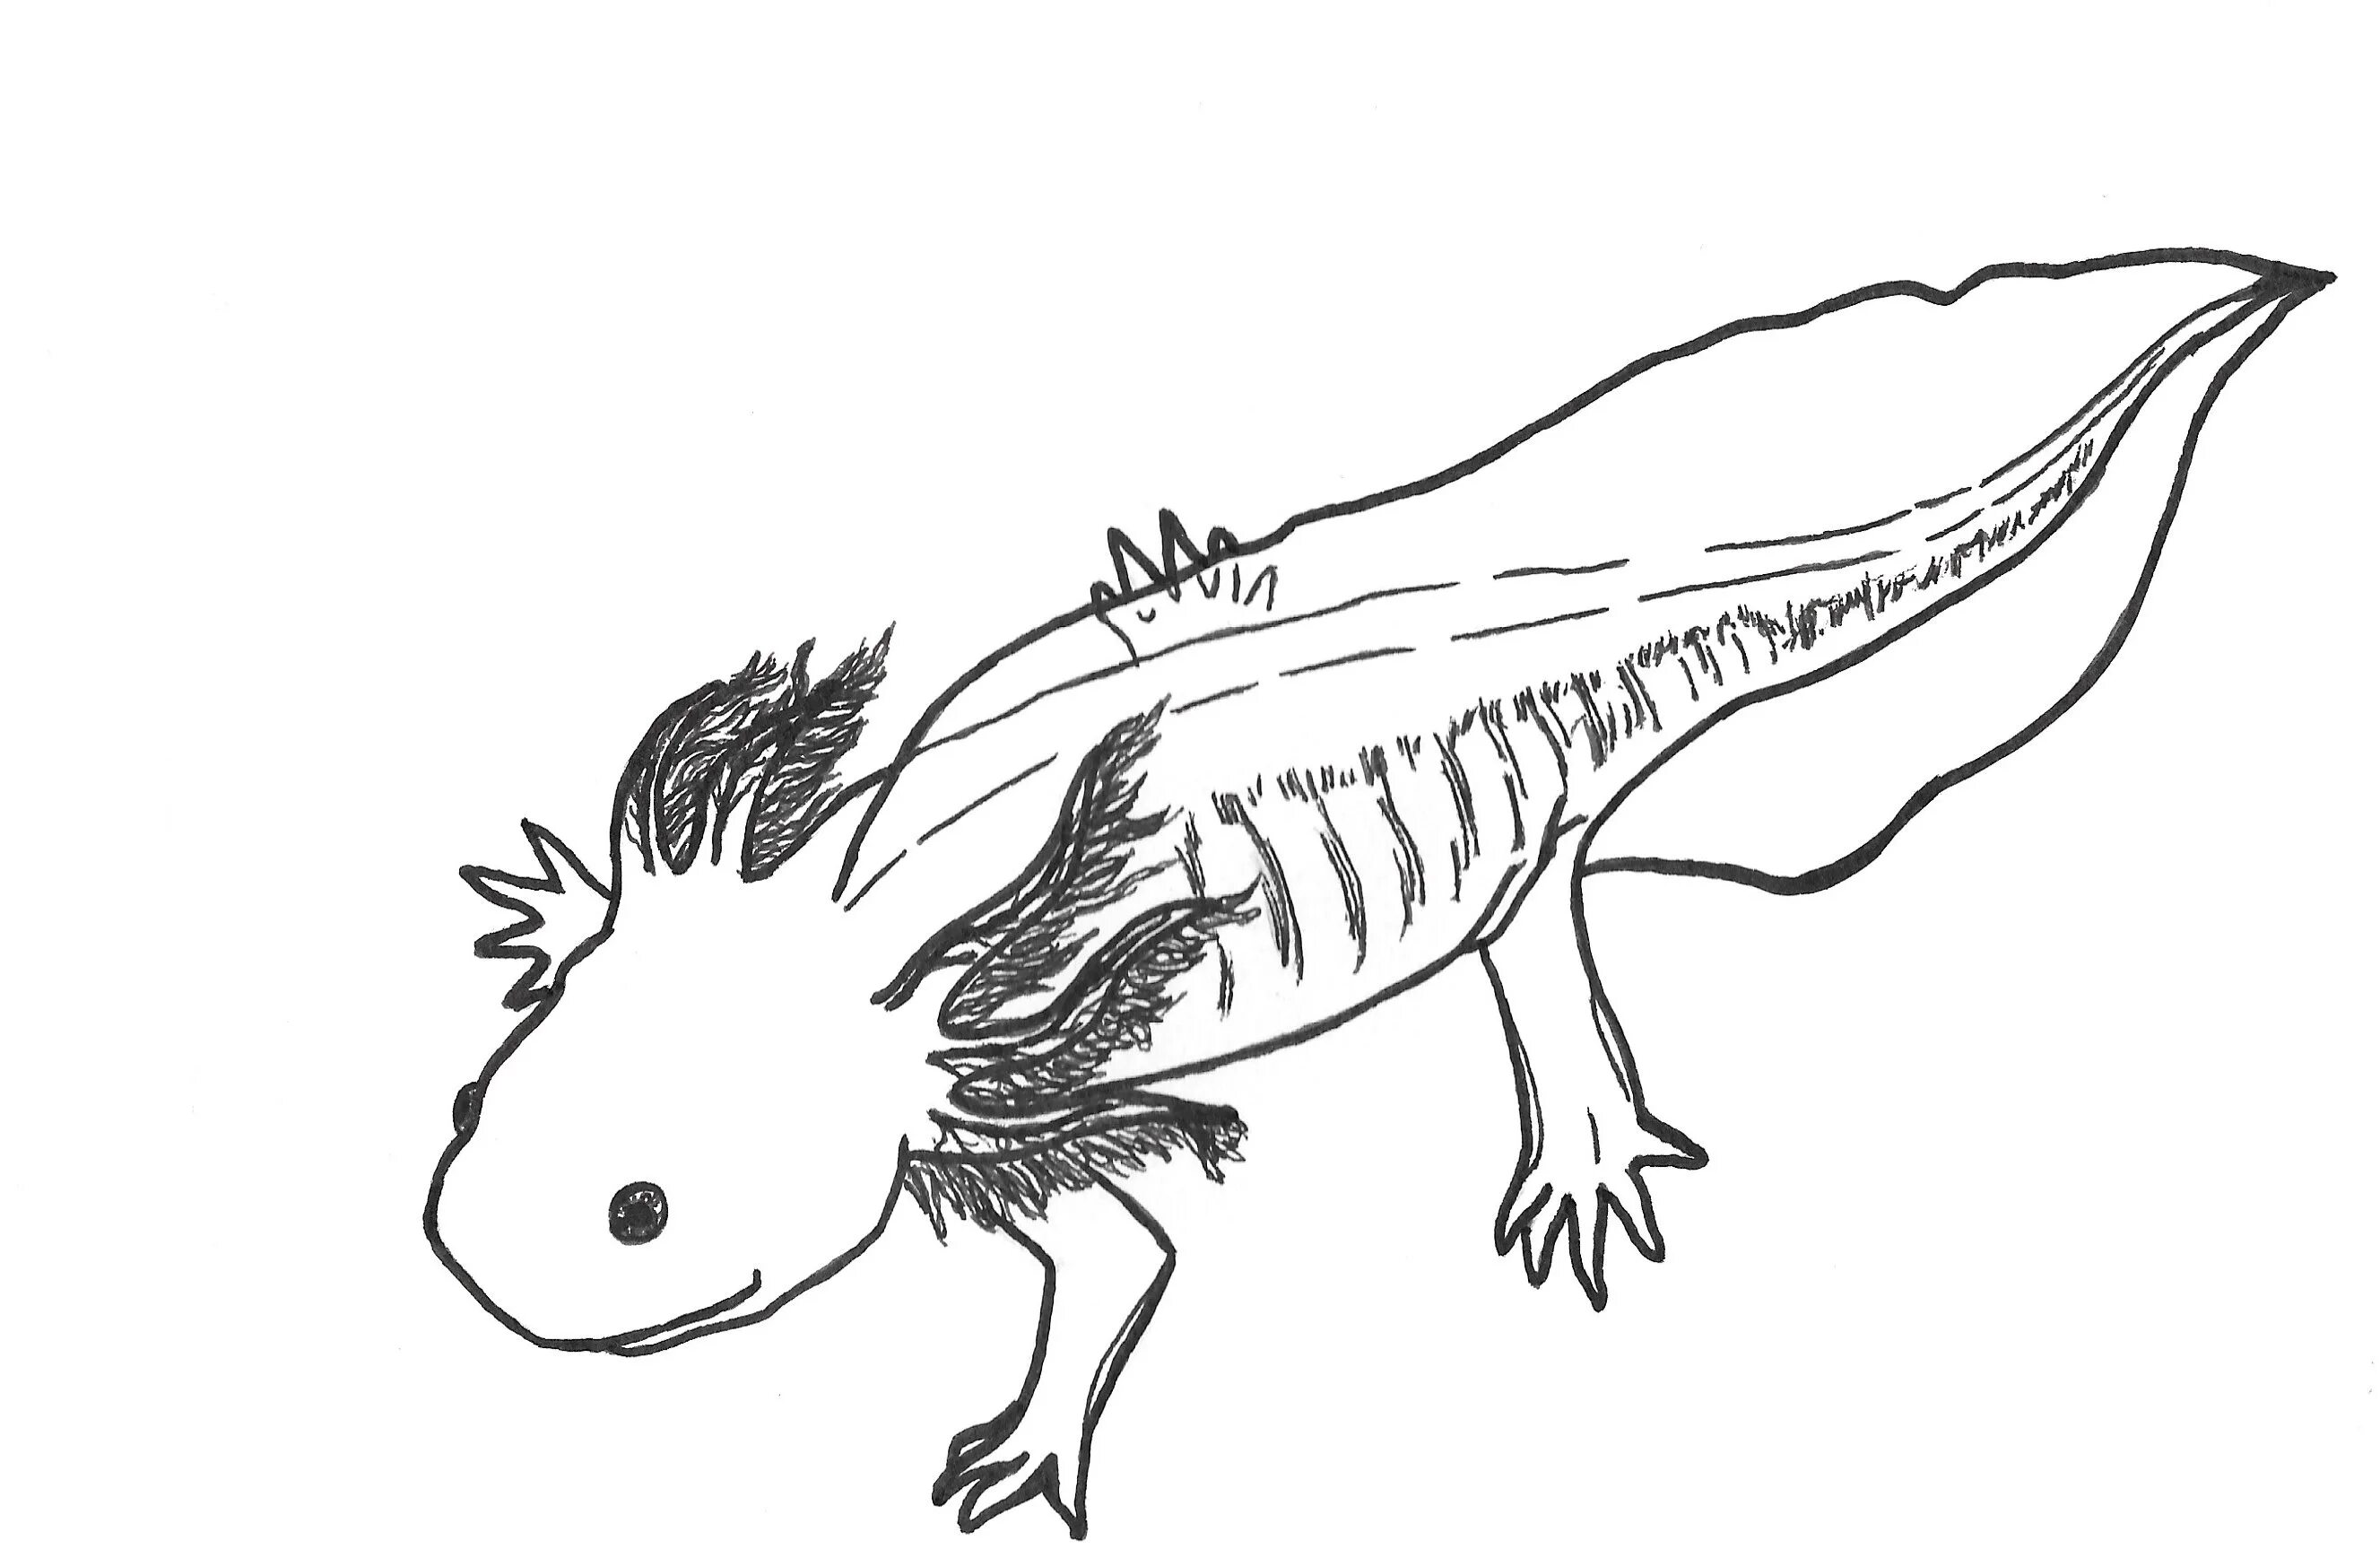 Axolotl playful coloring